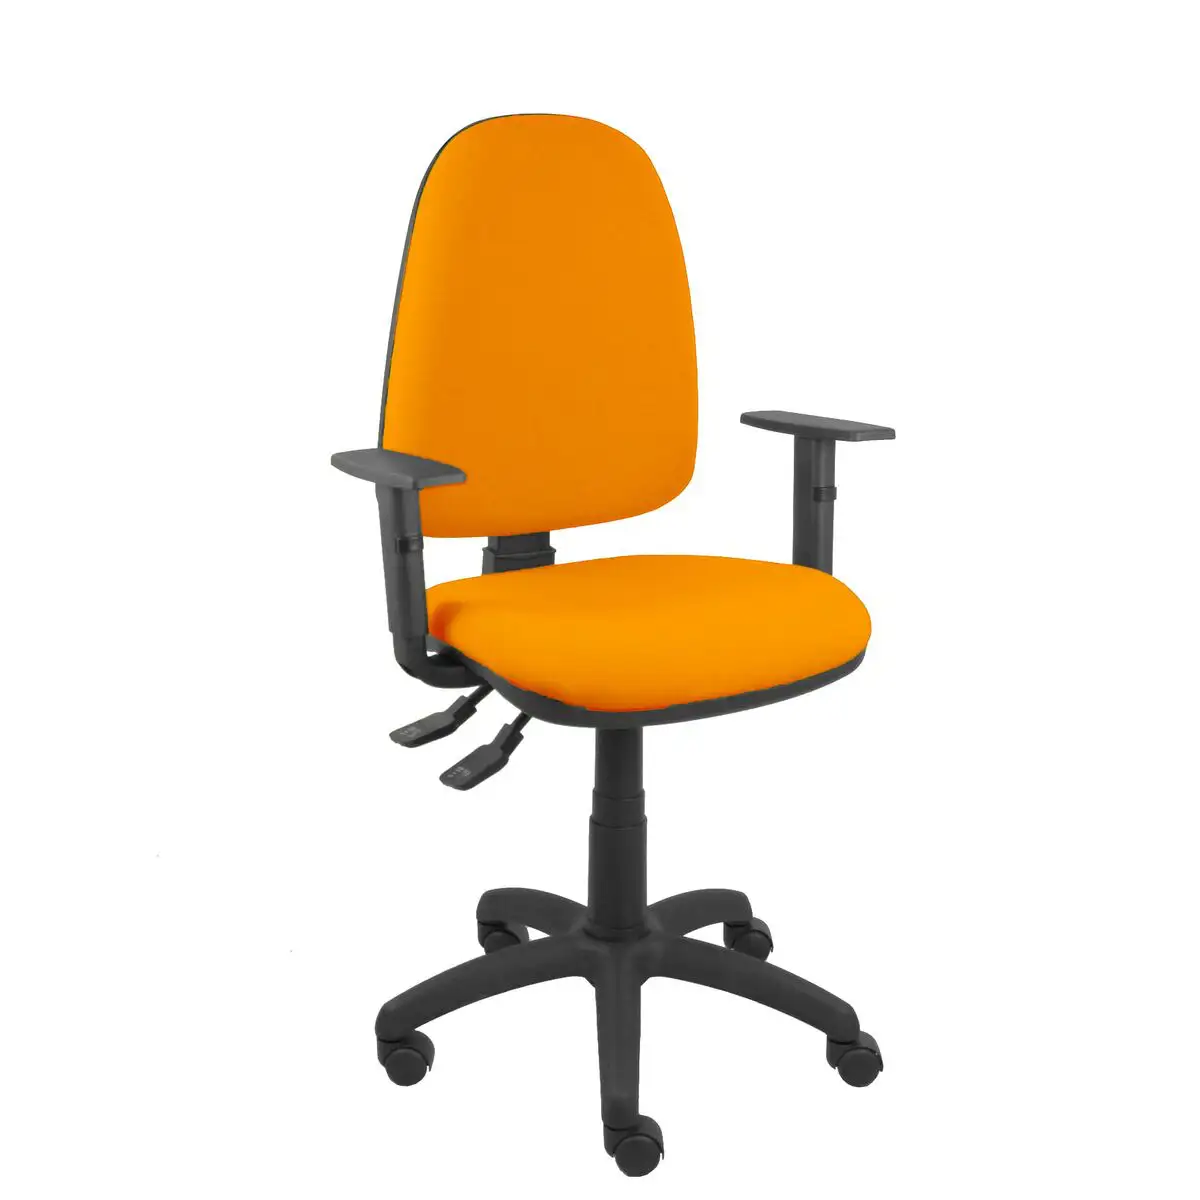 Chaise de bureau ayna s p c 8b10crn orange_6032. DIAYTAR SENEGAL - Votre Destination Shopping Incontournable. Parcourez nos rayons virtuels et trouvez des articles qui répondent à tous vos besoins, du quotidien à l'exceptionnel.